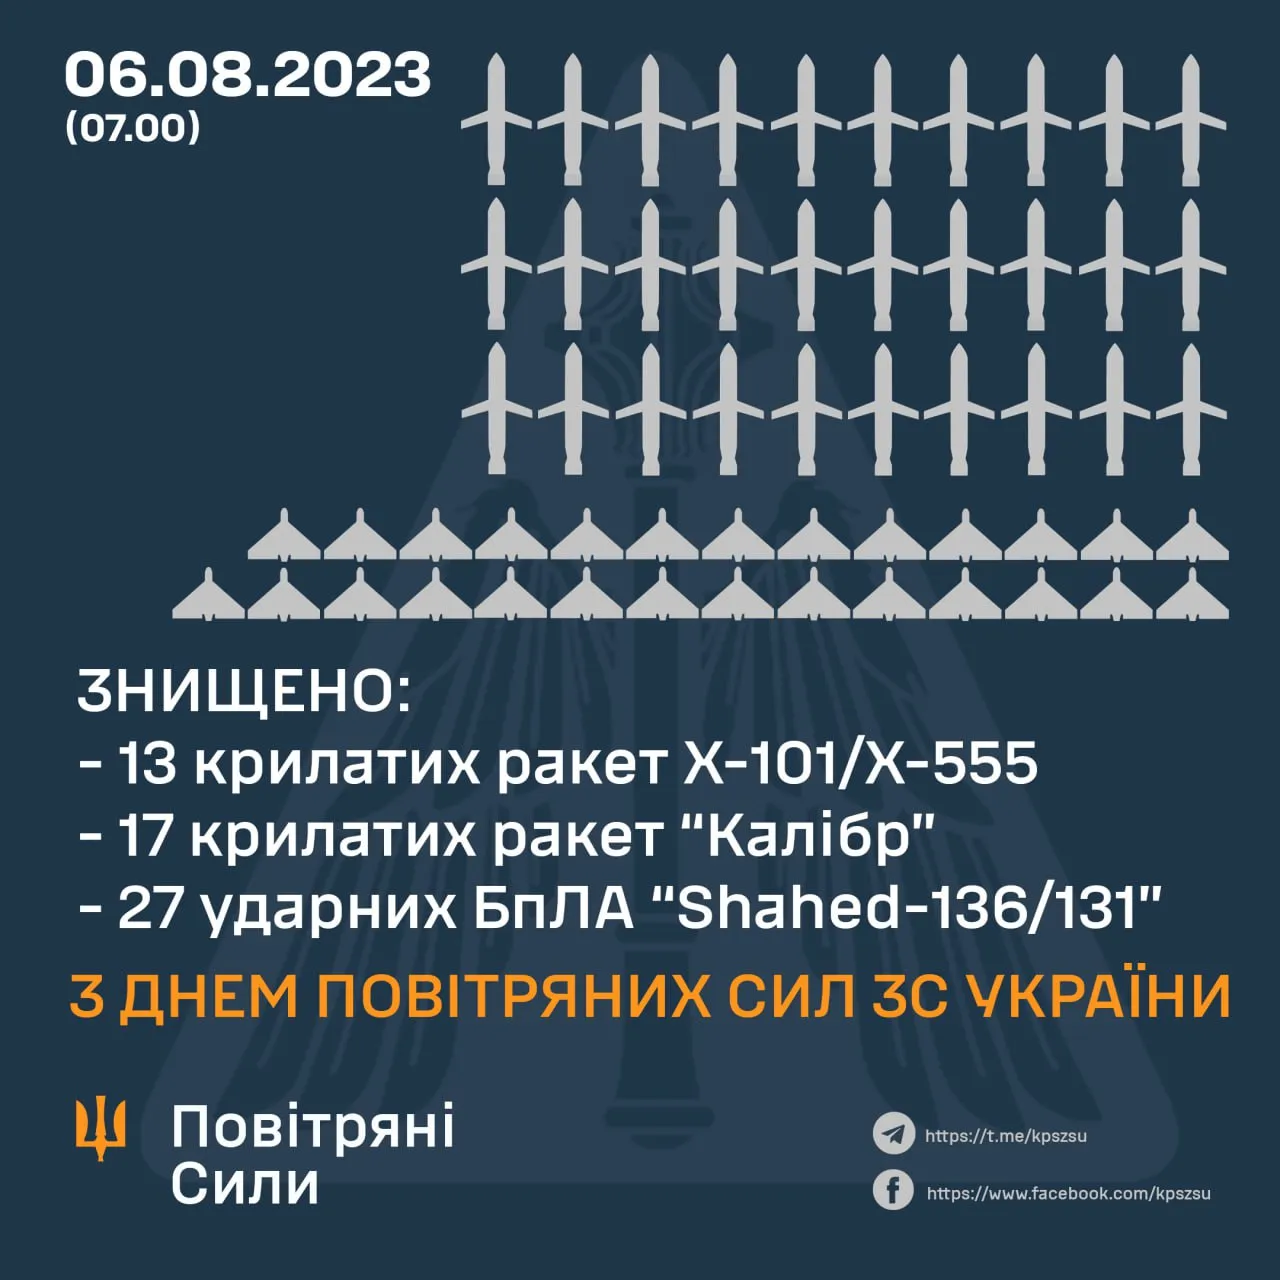 Сколько ракет и Шахедов сбили Воздушные силы 5-6 августа